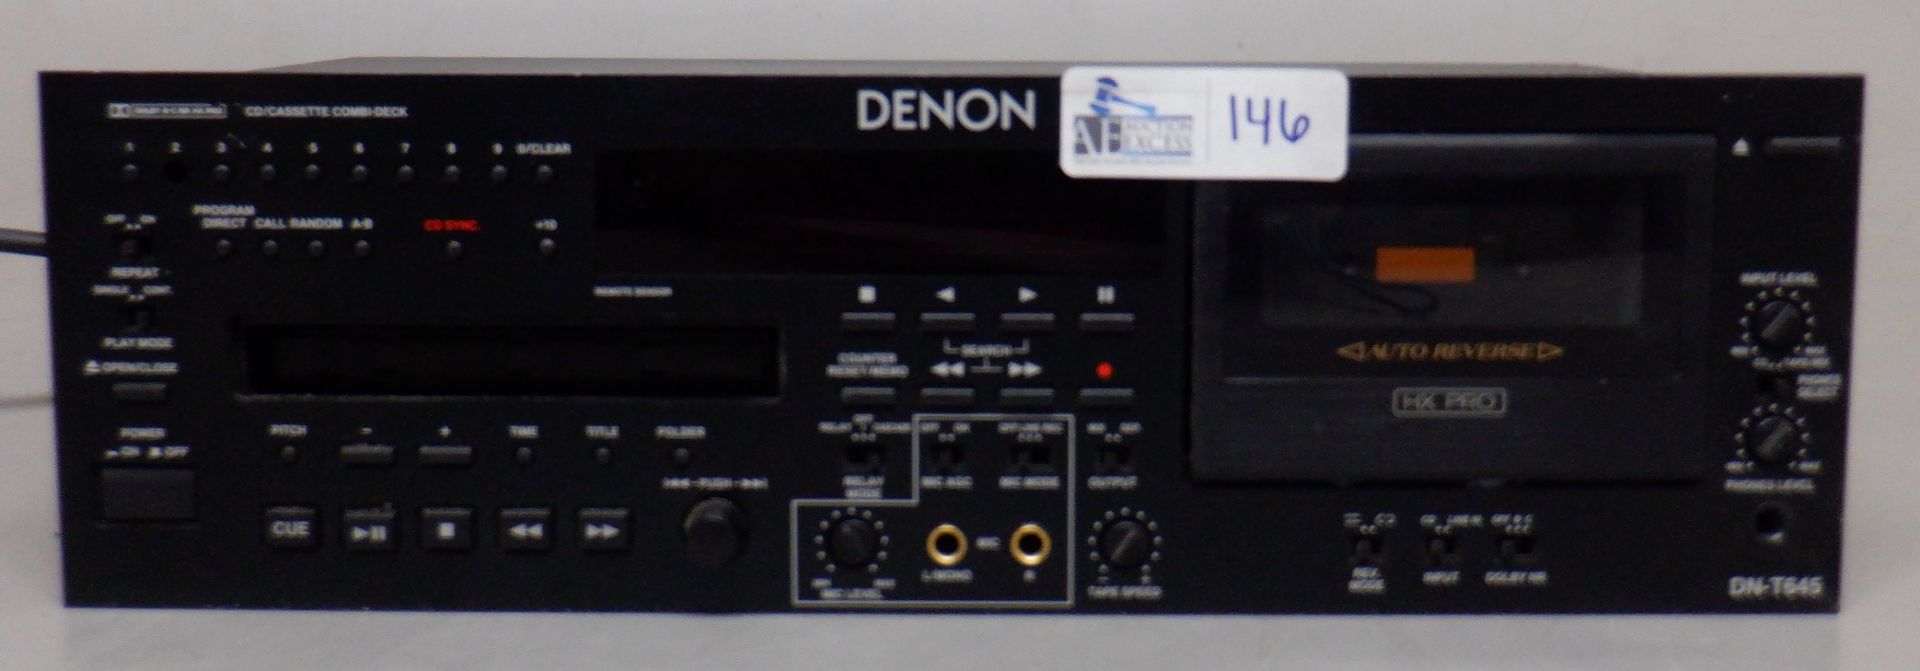 DENON DN-T645